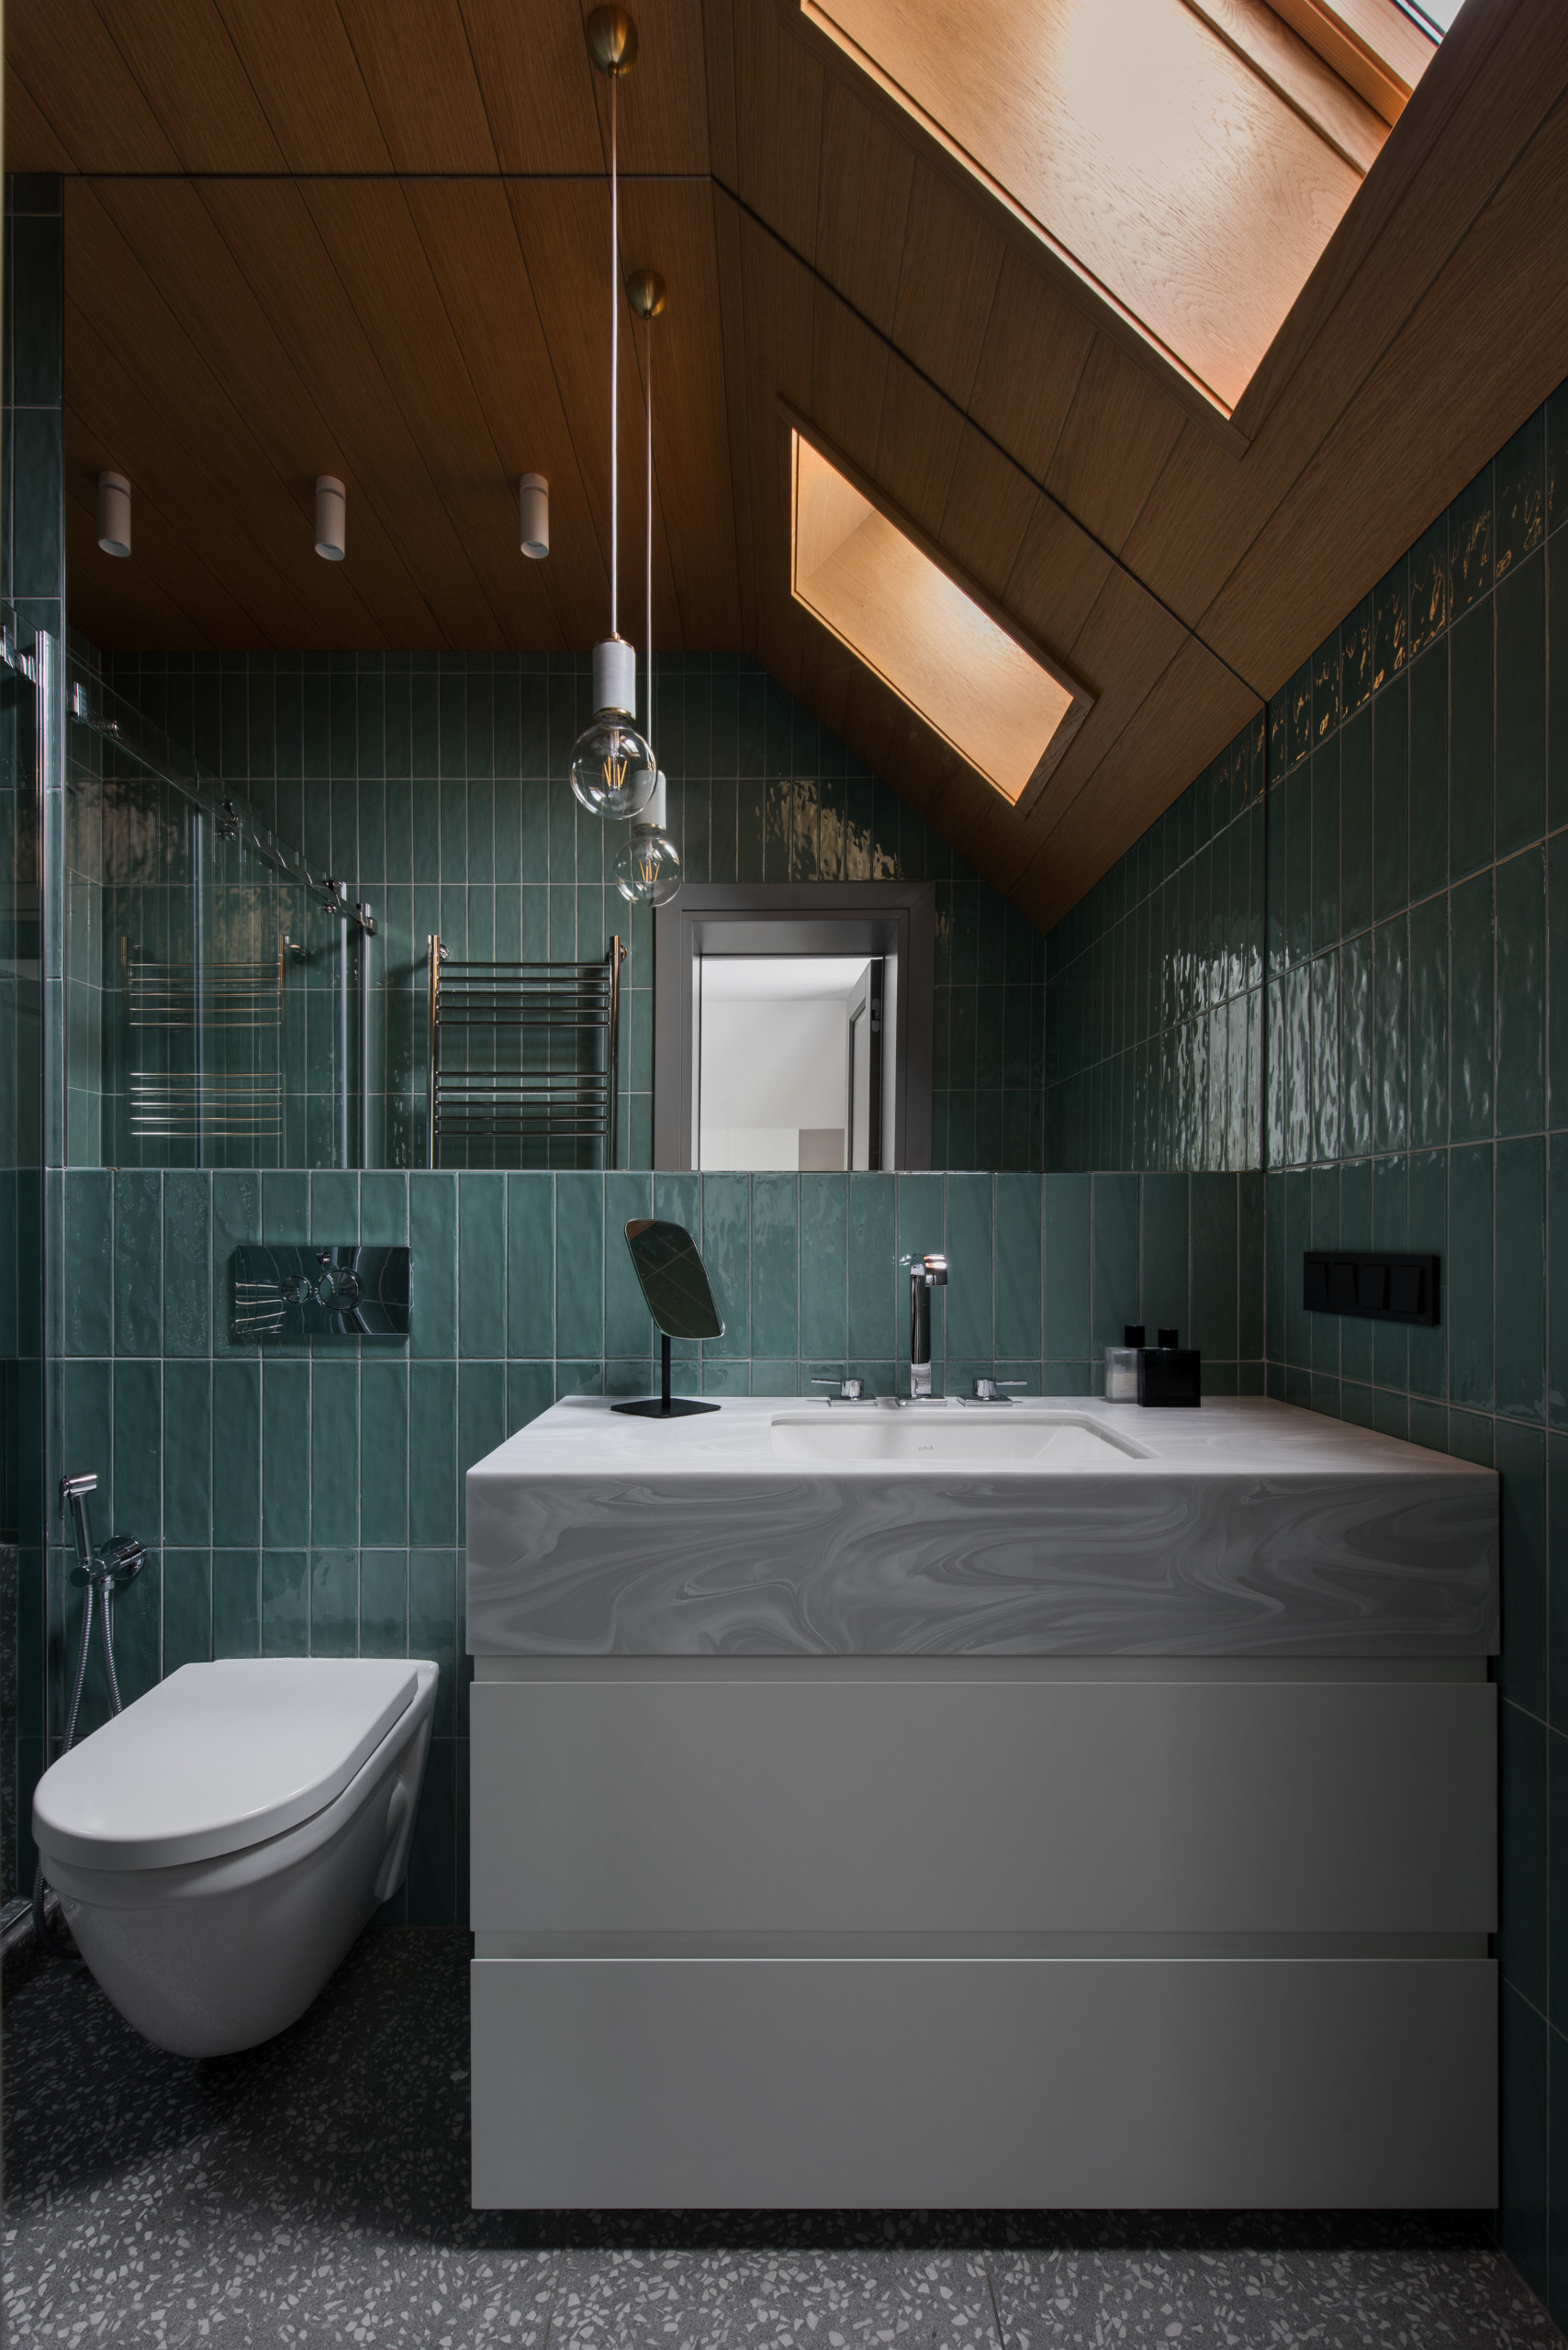 Ванная Комната Дизайн Фото С Зелеными Полами